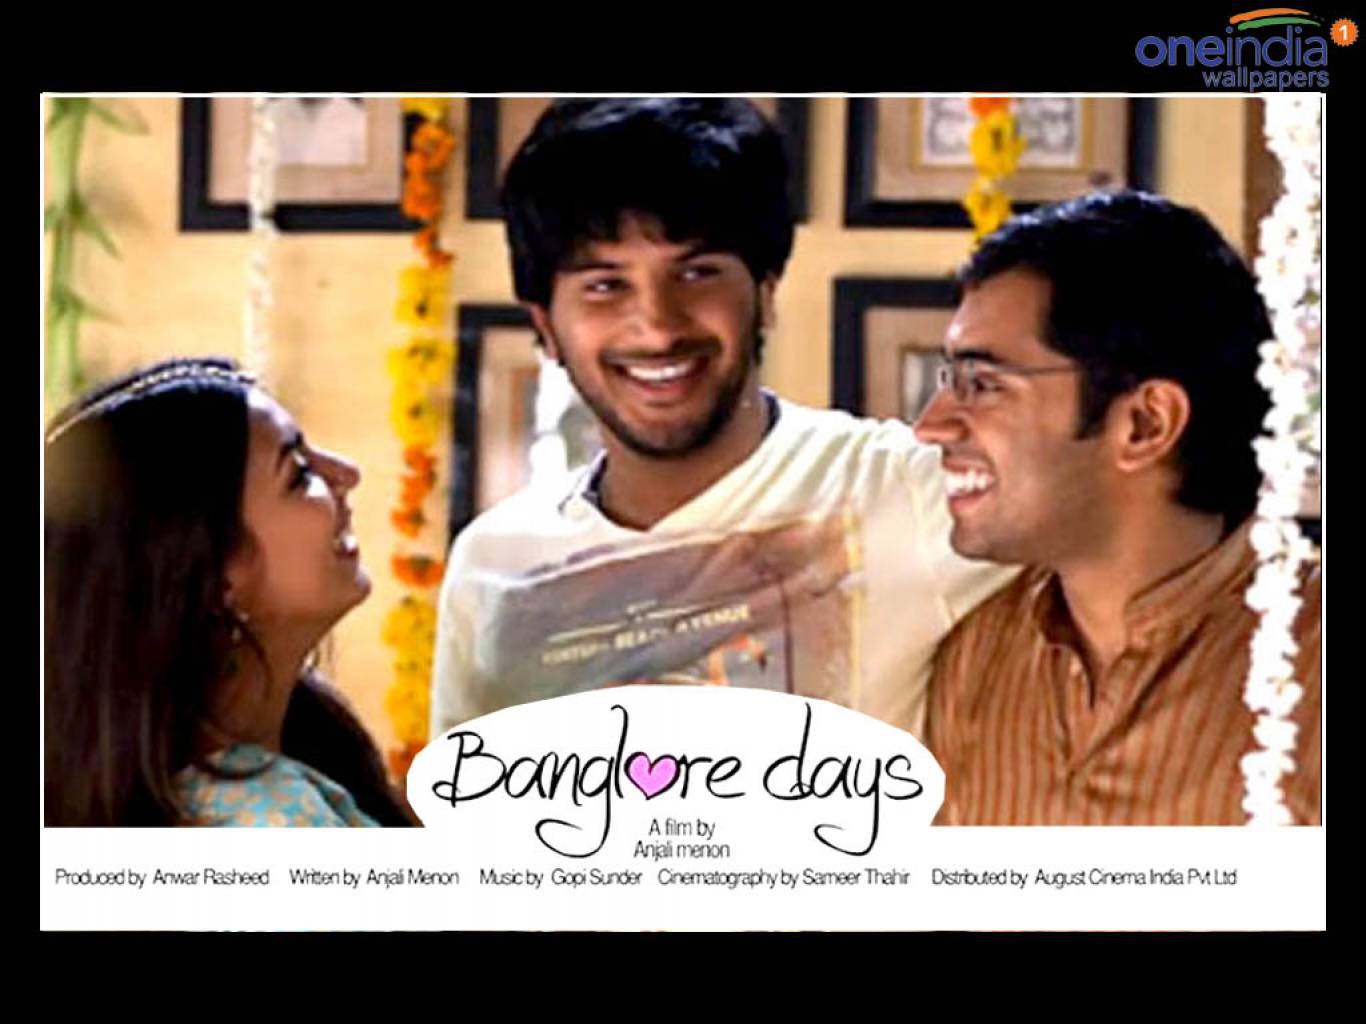 Bangalore Days Movie HD Wallpaper. Bangalore Days HD Movie